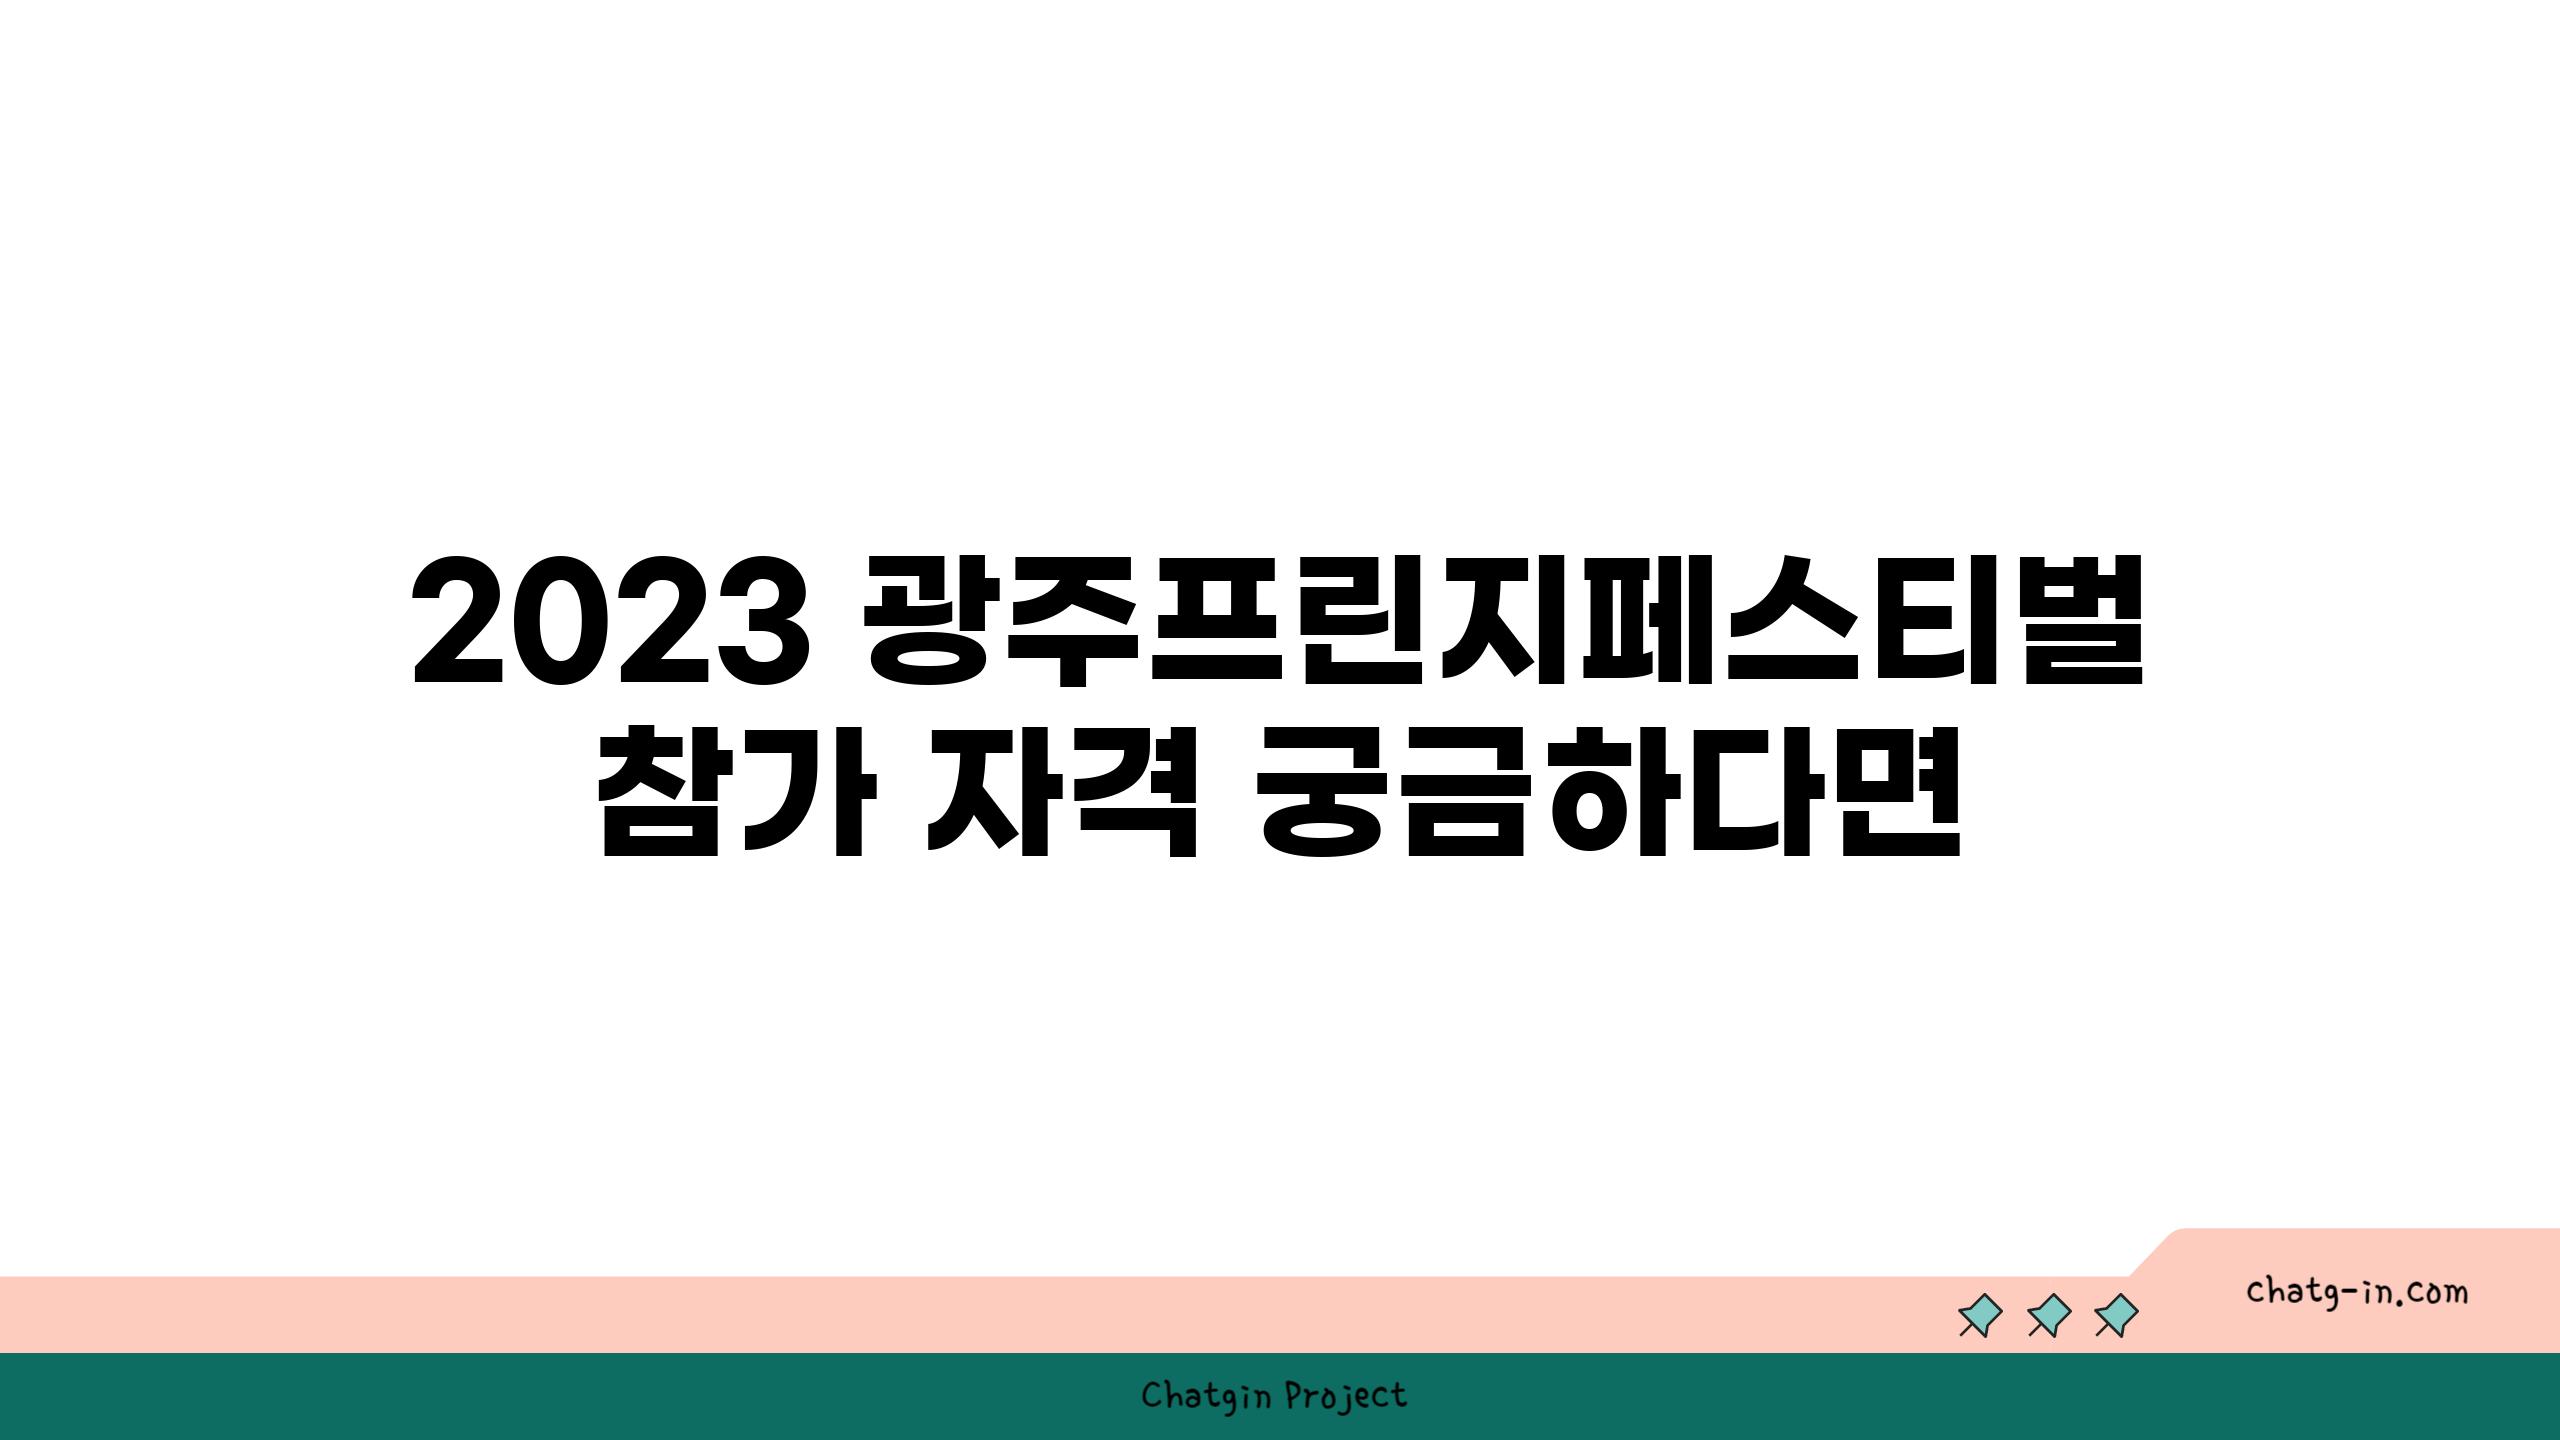 2023 광주프린지페스티벌 참가 자격 궁금하다면